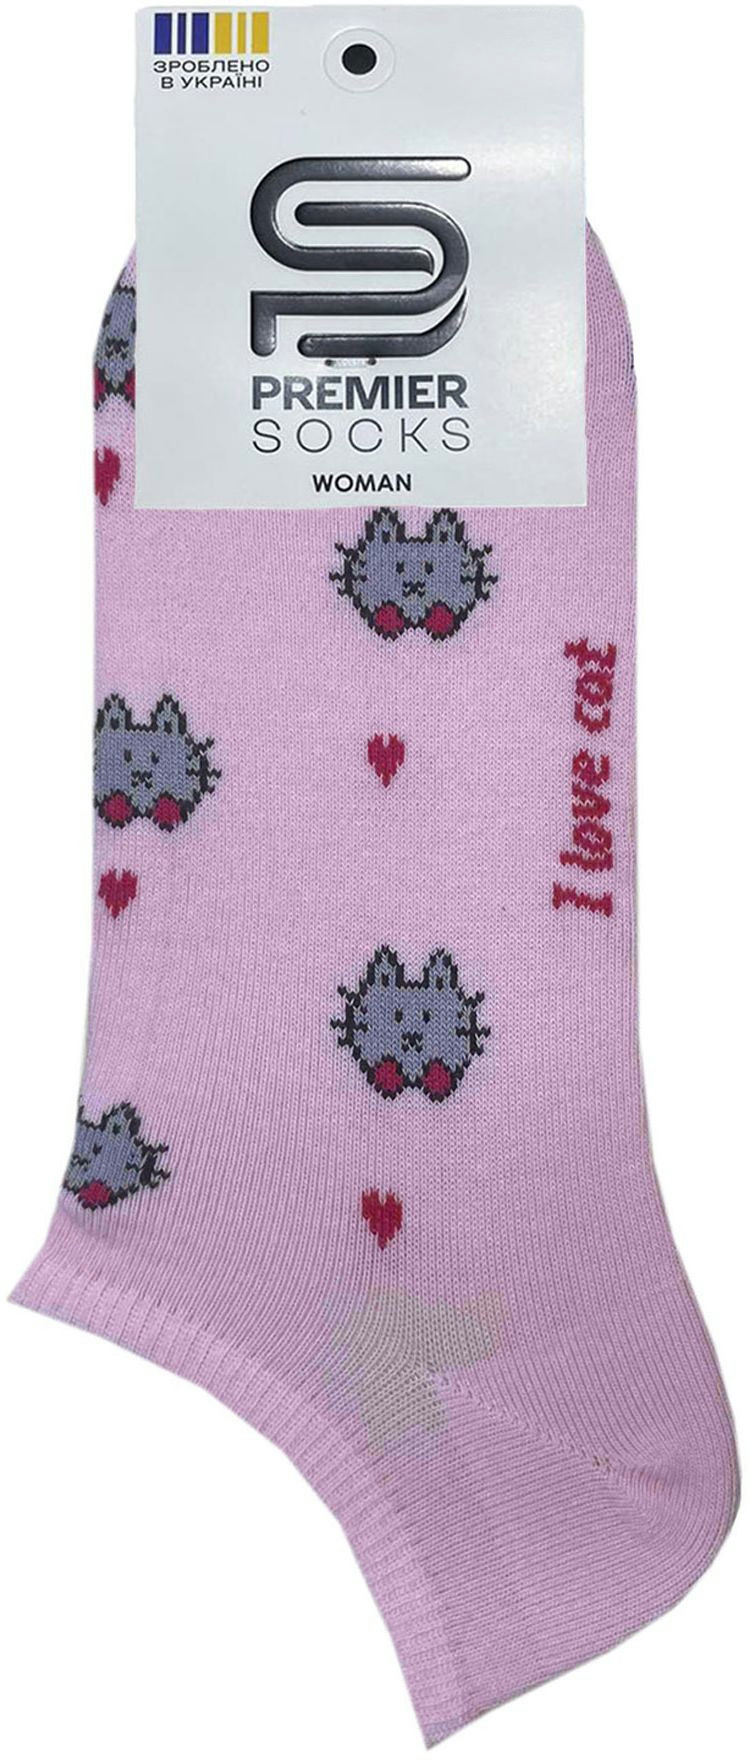 Носки женские Premier Socks 36-40 1 пара розовые с принтом Коты (4820163318899) фото 2